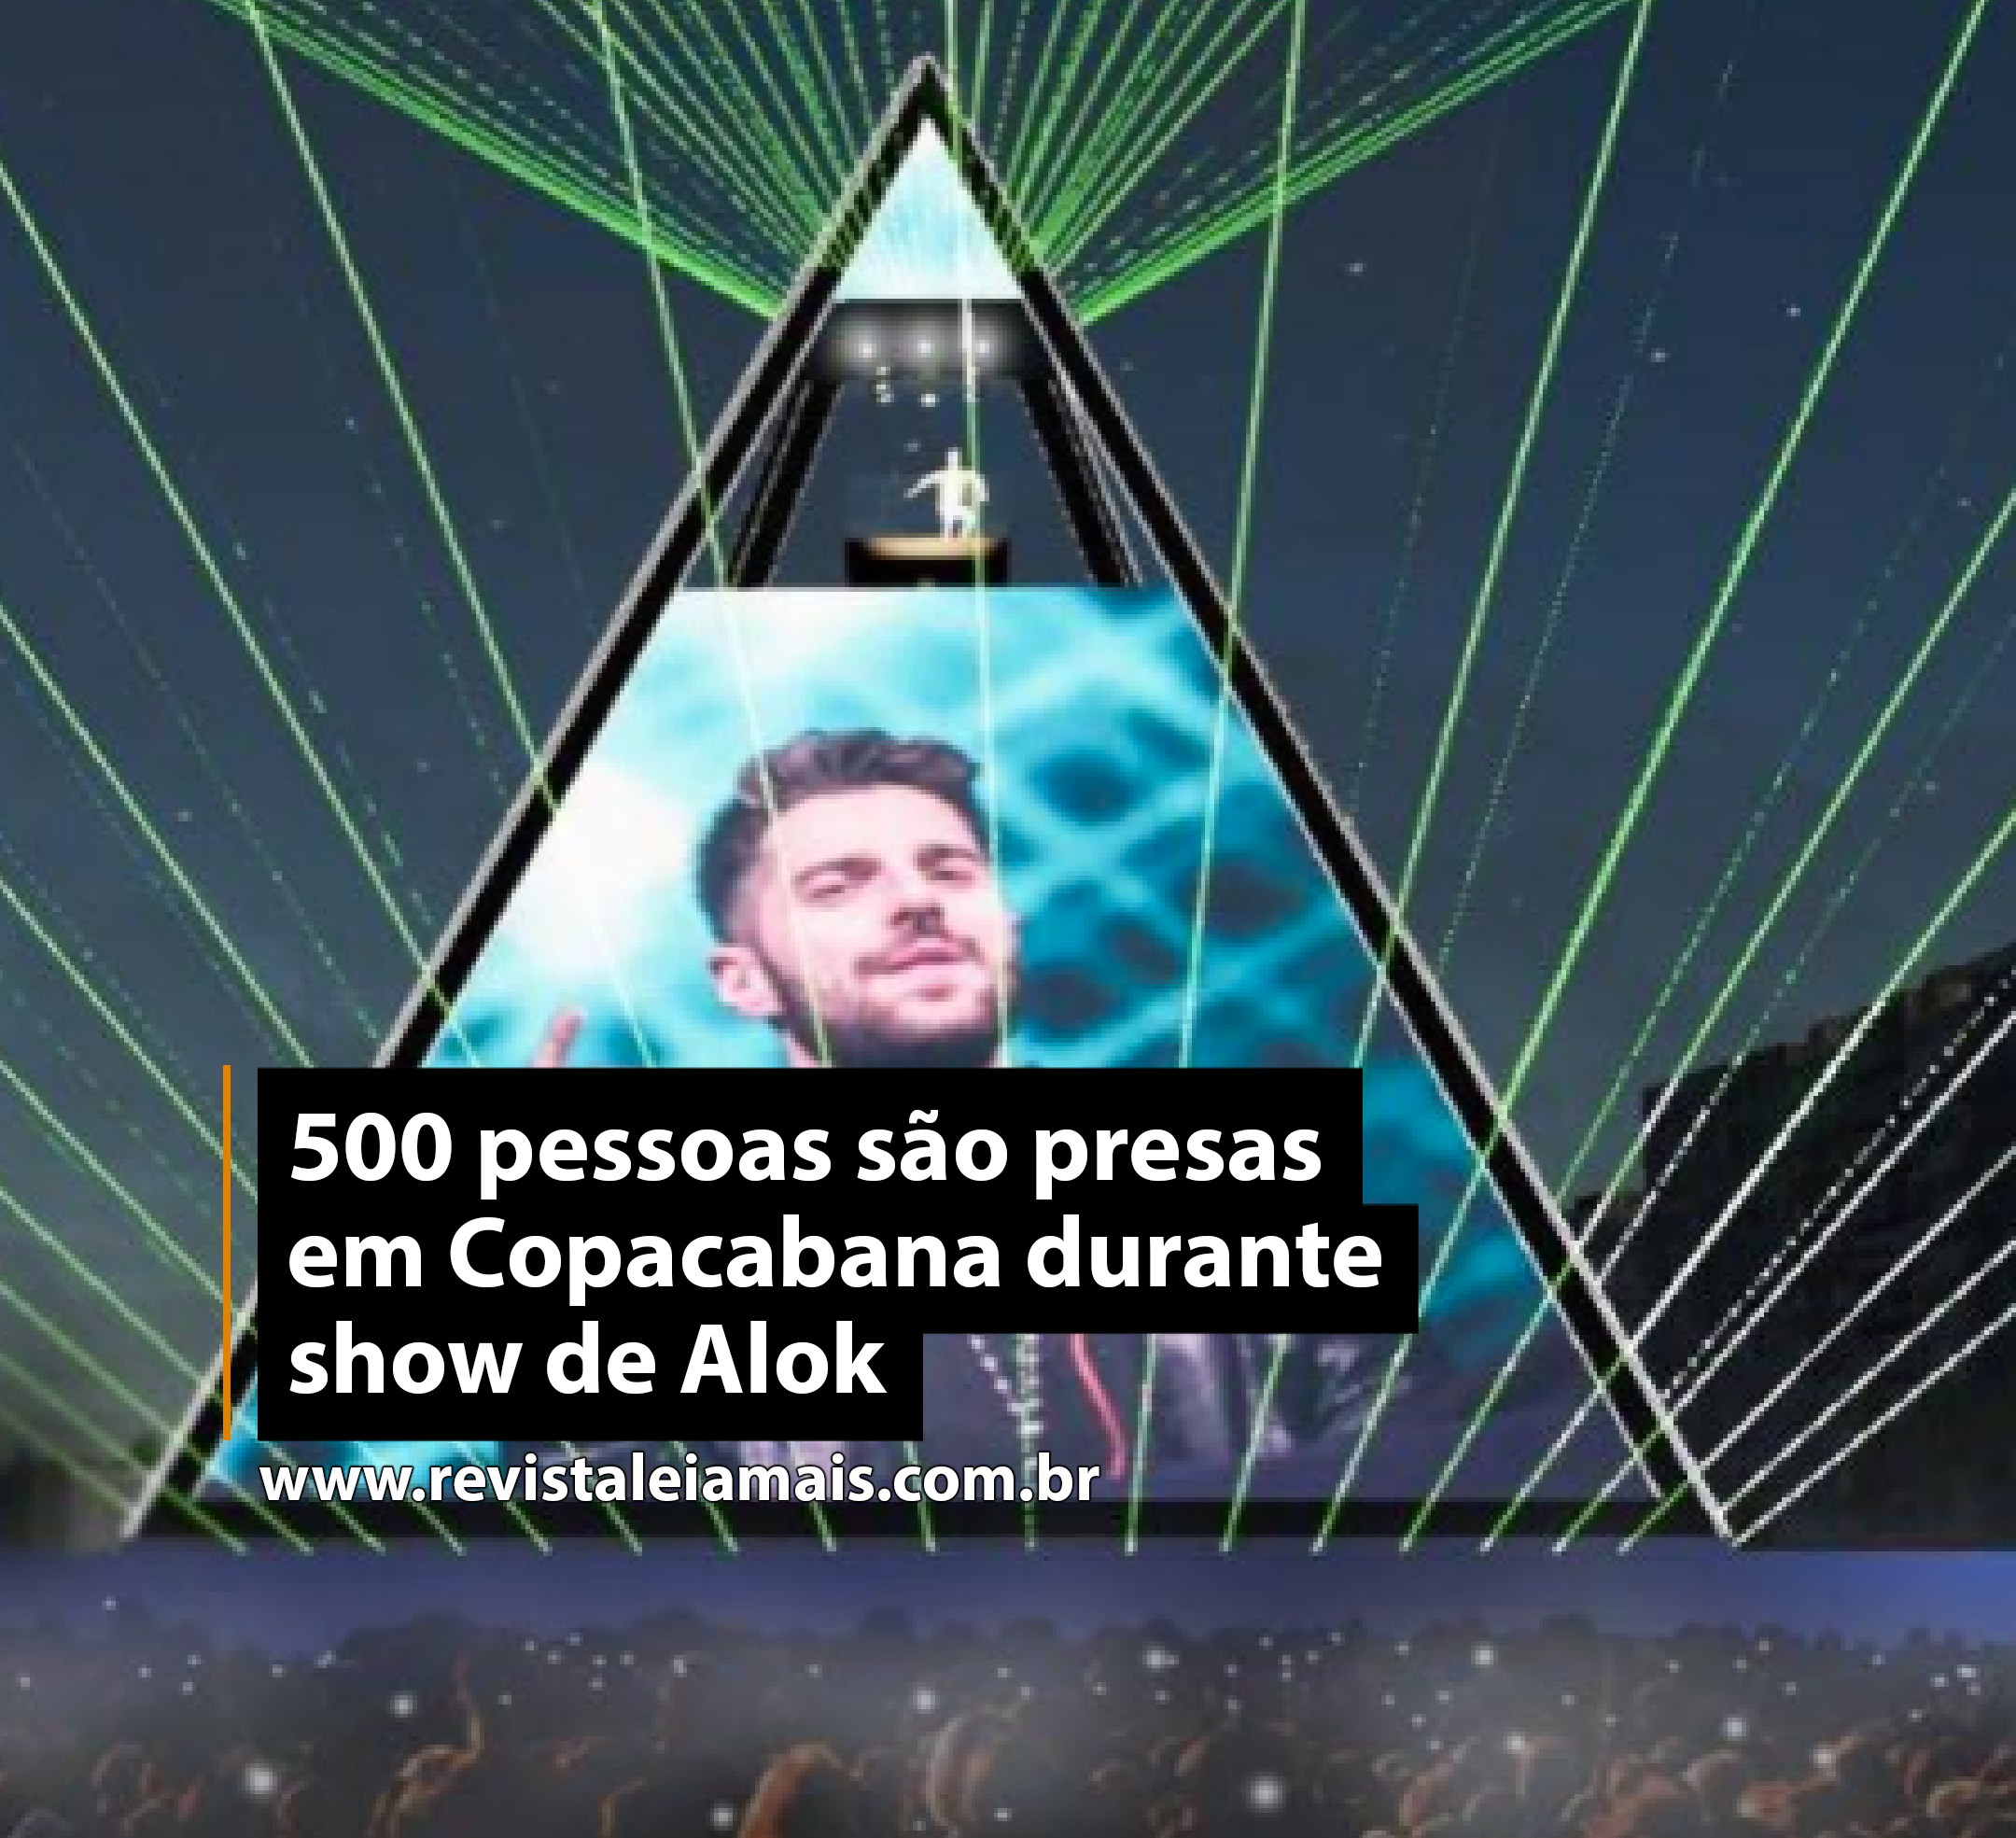 500 pessoas são presas em Copacabana durante show de Alok